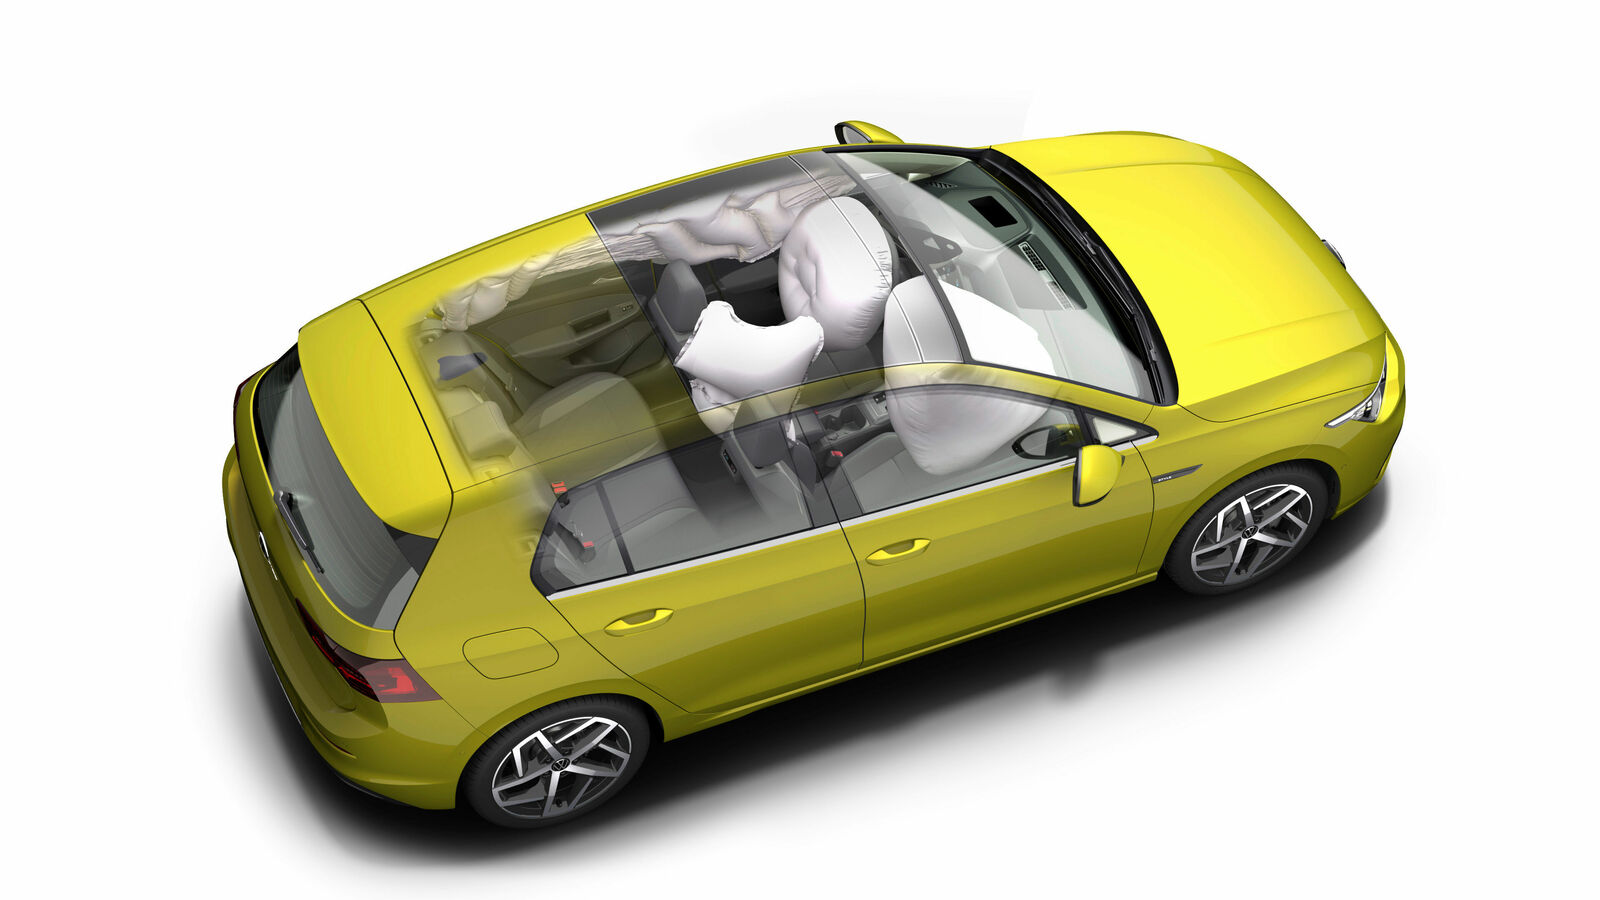 Volkswagen ‘ R’ Door Lock Covers (Multiple Models)